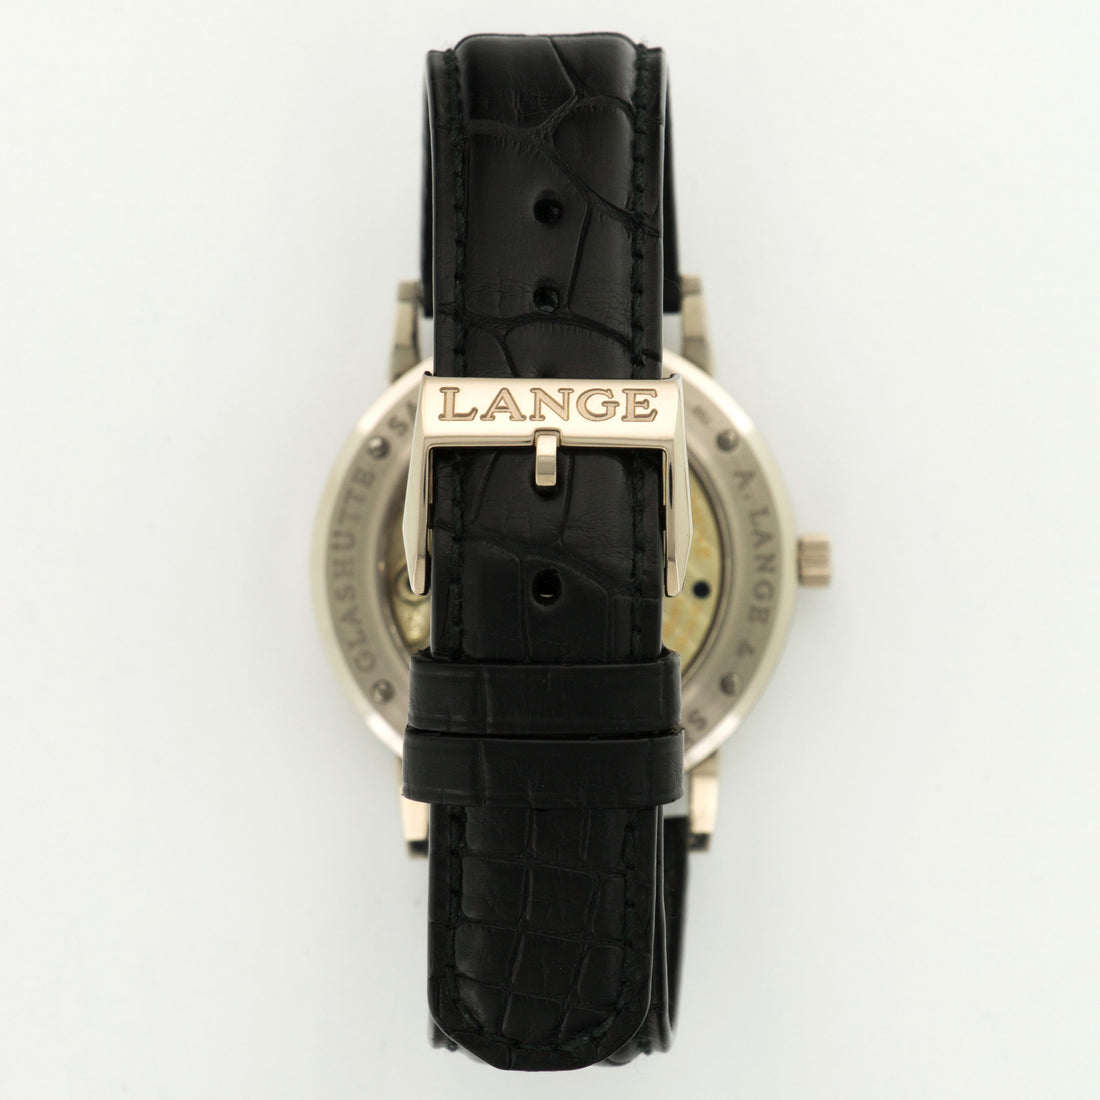 A. Lange & Sohne White Gold 1815 Watch Ref. 206.029